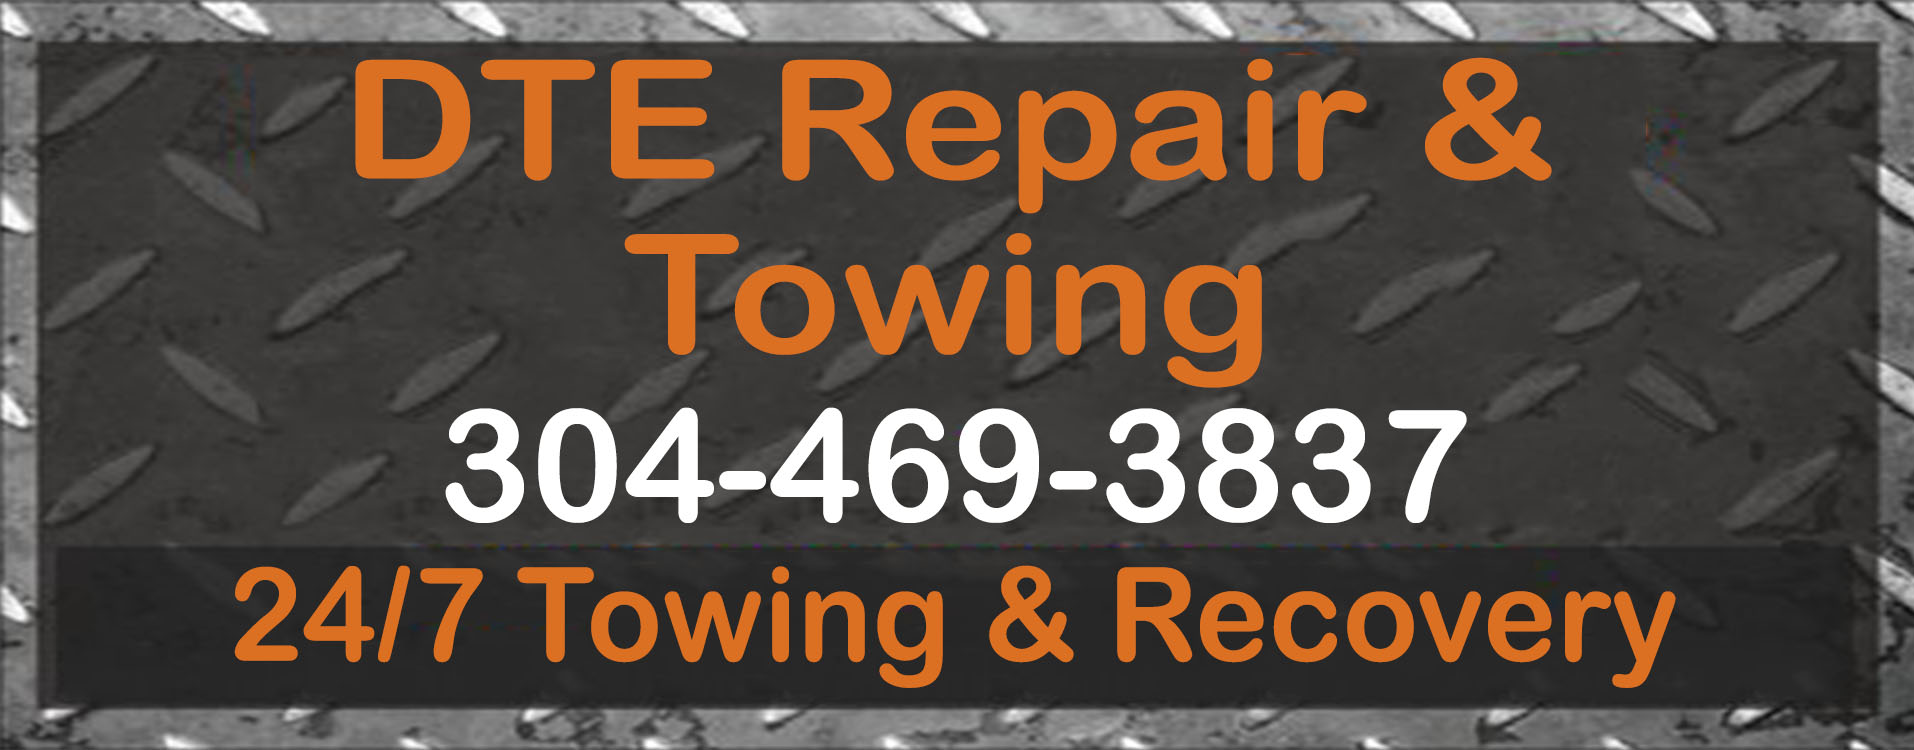 DTE Repair & Towing